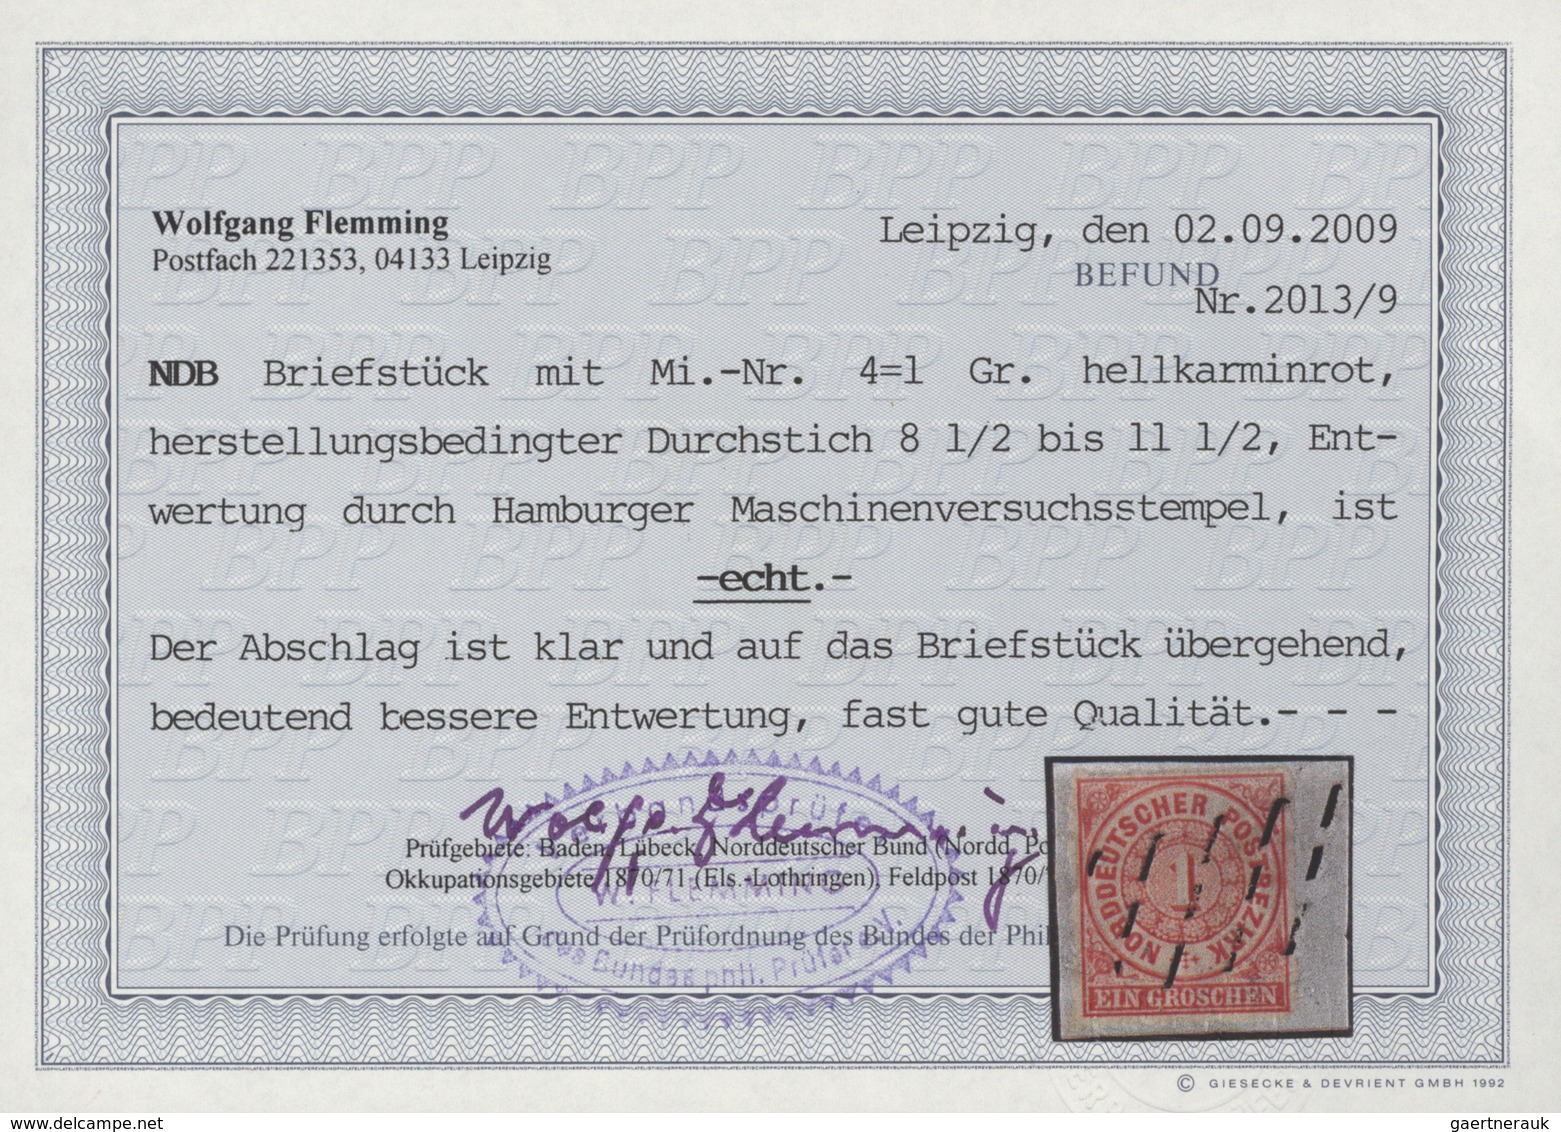 Norddeutscher Bund - Marken und Briefe: 1868/1870, NDP/Elsaß-Lothringen, saubere Sammlung von 53 Mar